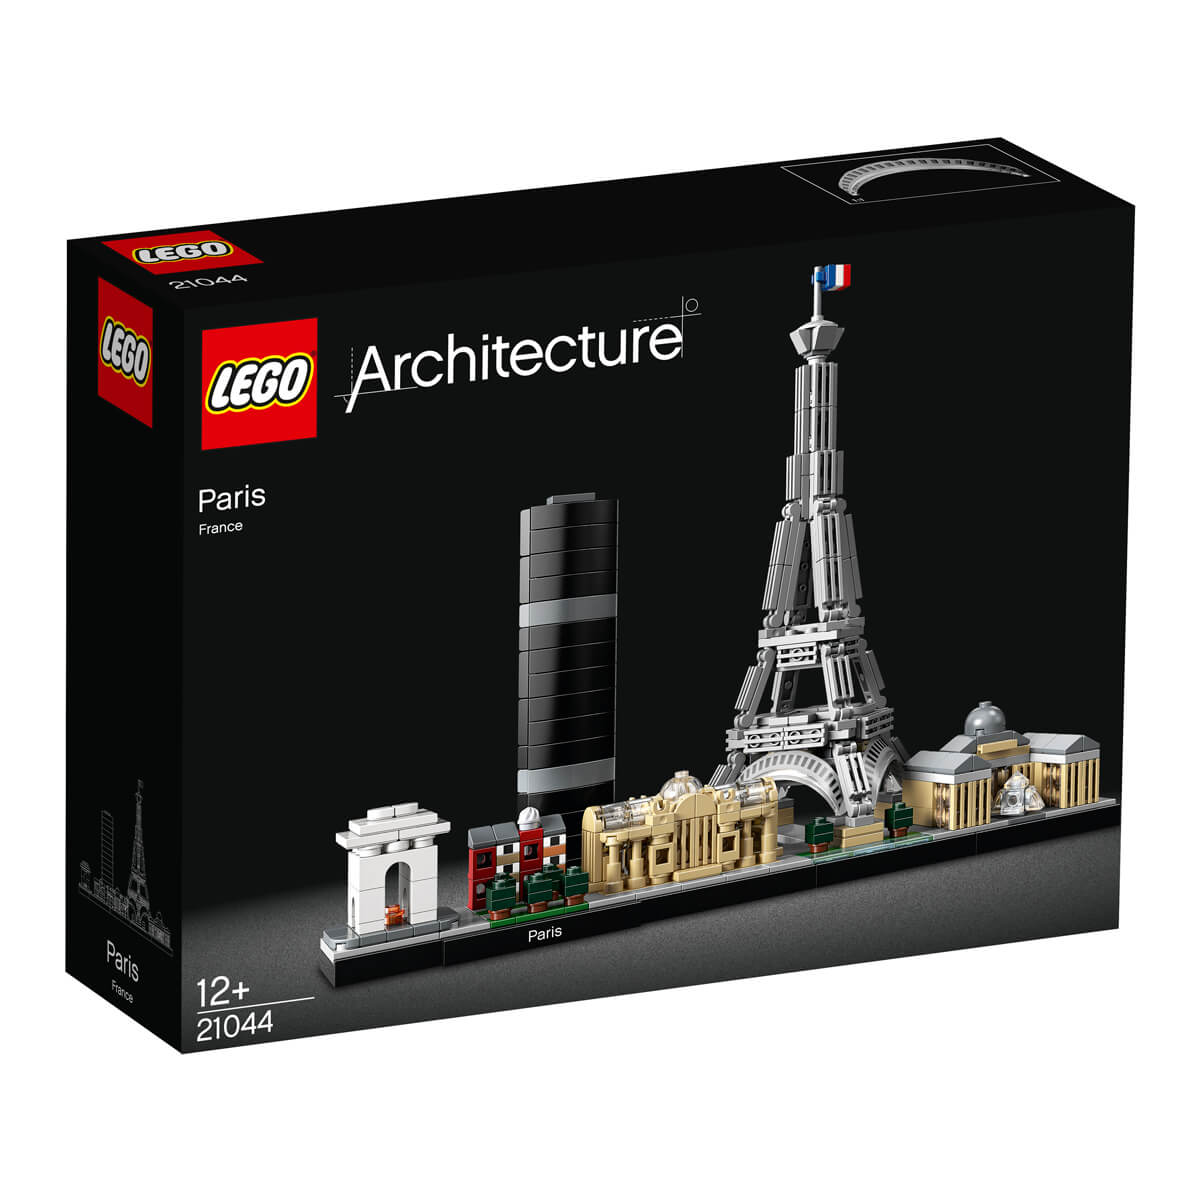 ΠΑΙΔΙ | Παιχνίδια | LEGO | CREATOR EXPERT & ART 21044 Paris